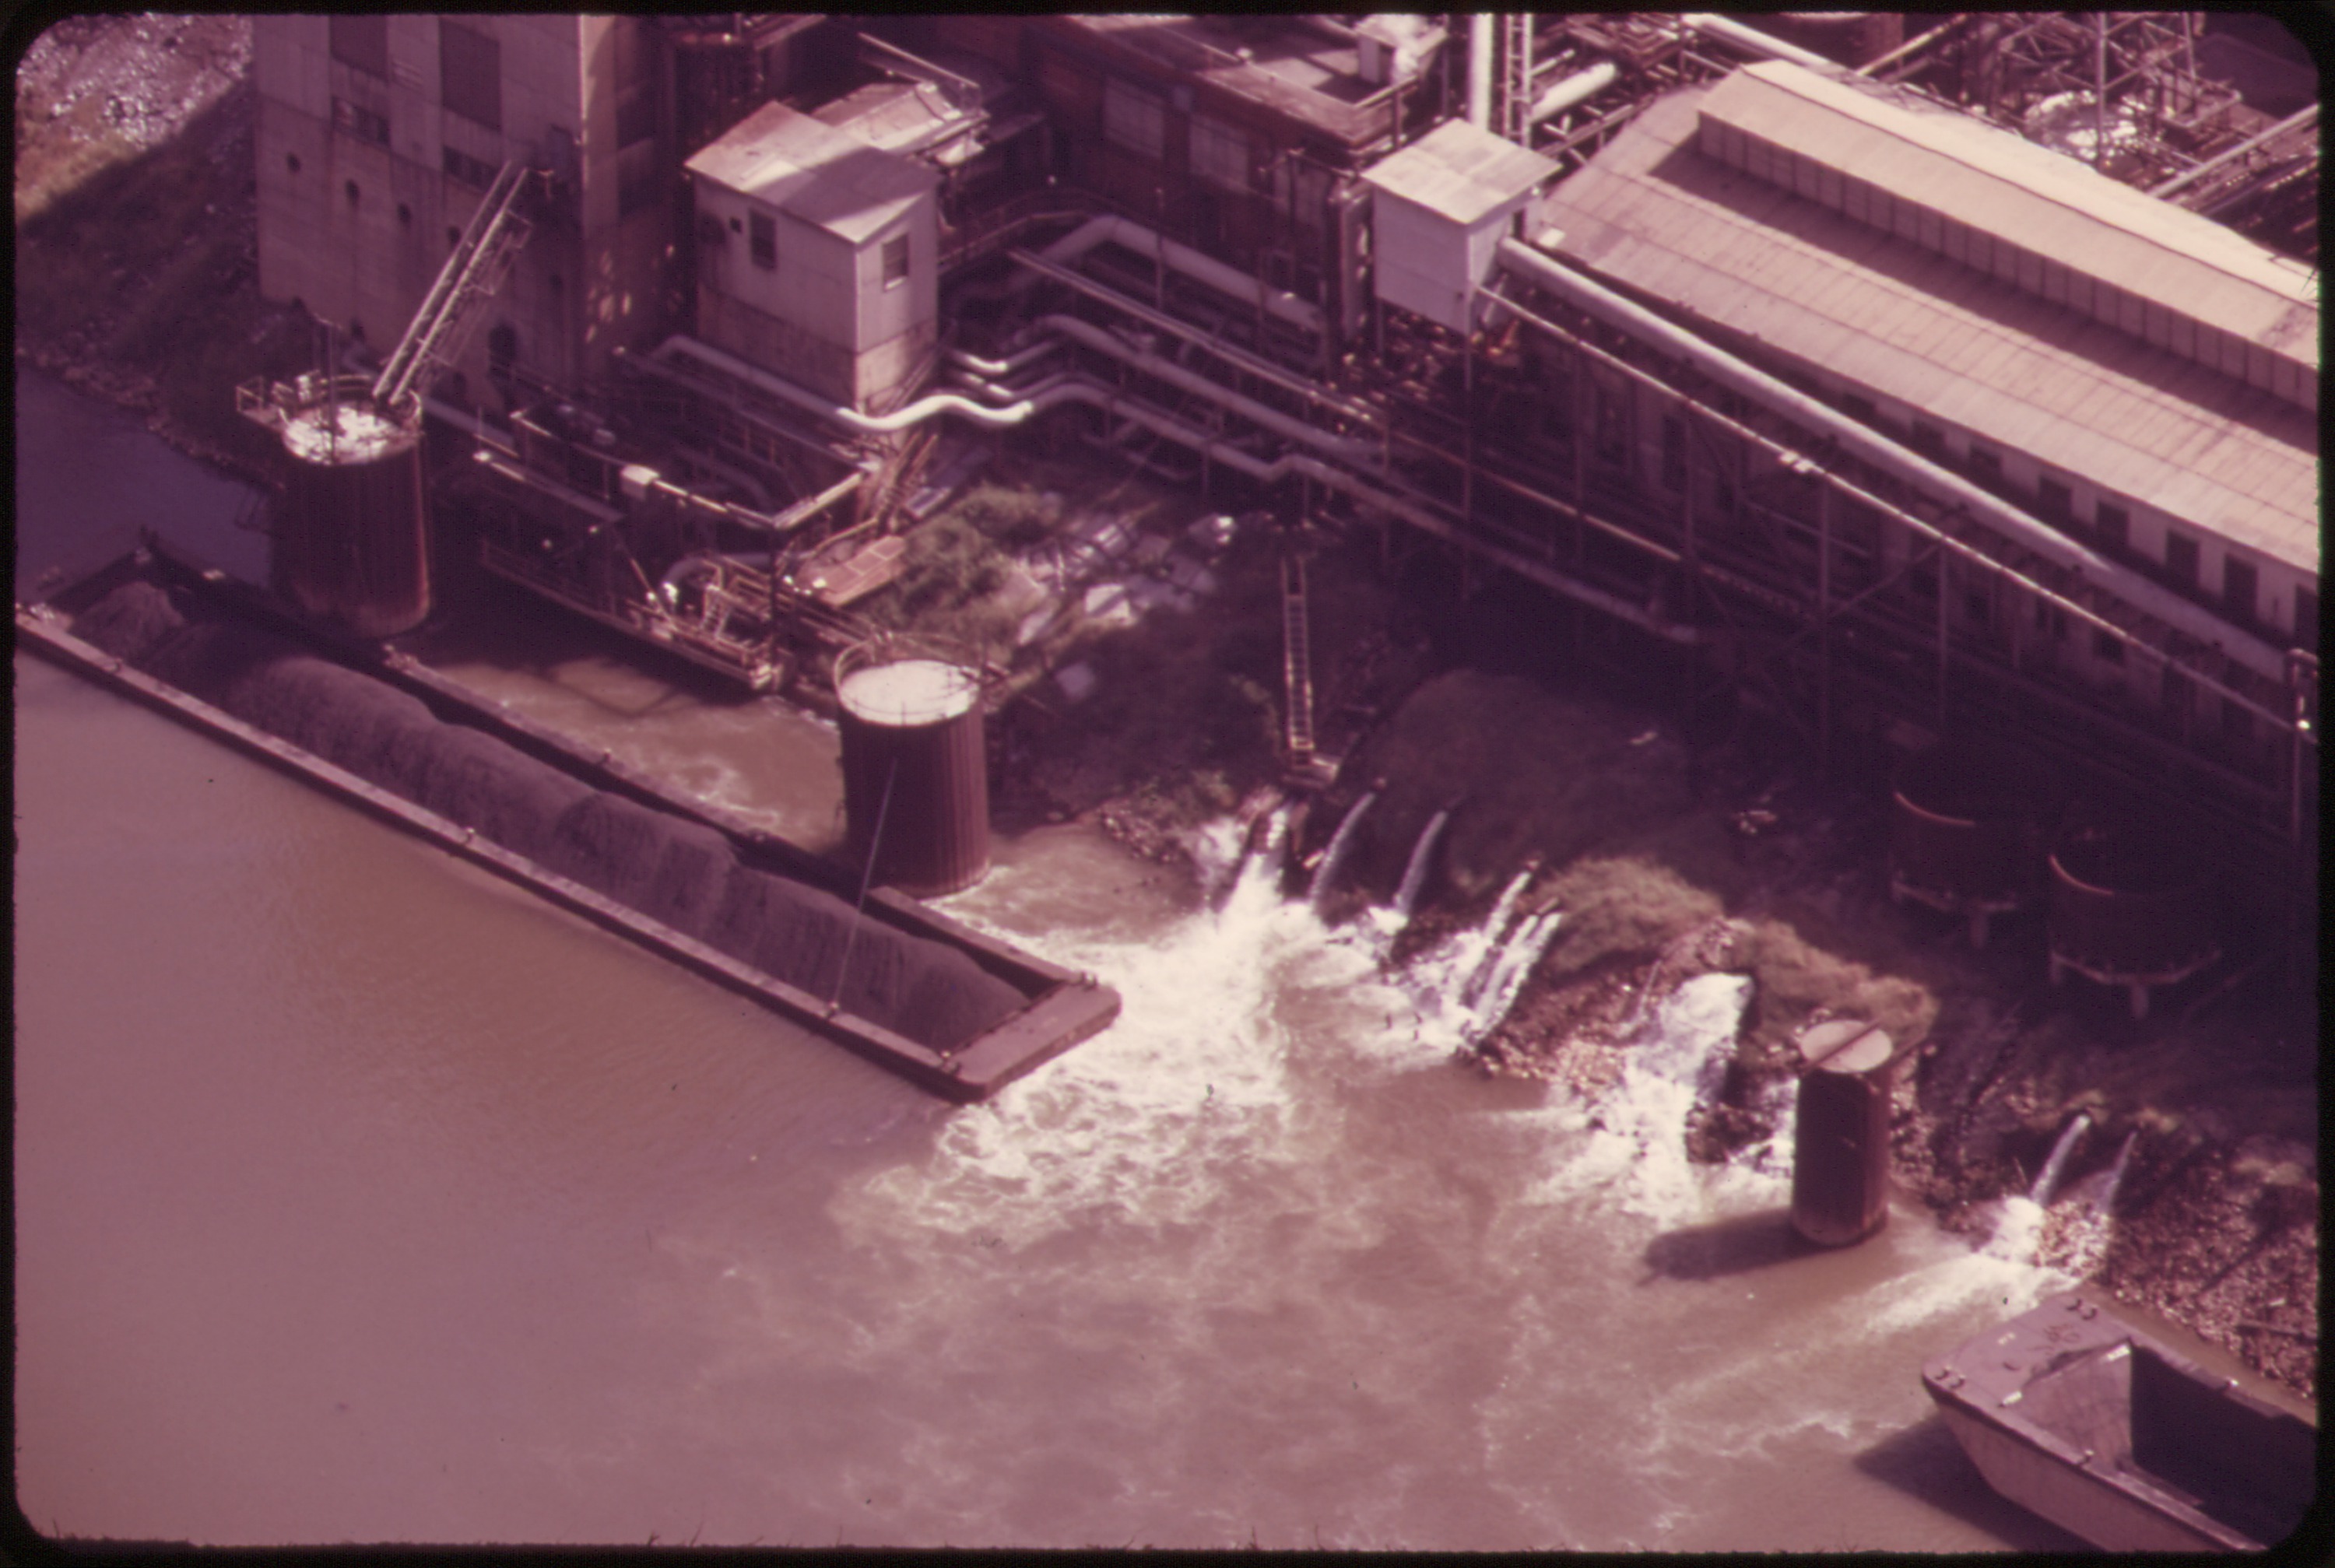 Contaminación del agua con origen industrial por aguas con altas temperaturas en el Kanawha River, West Virginia, USA (1974).